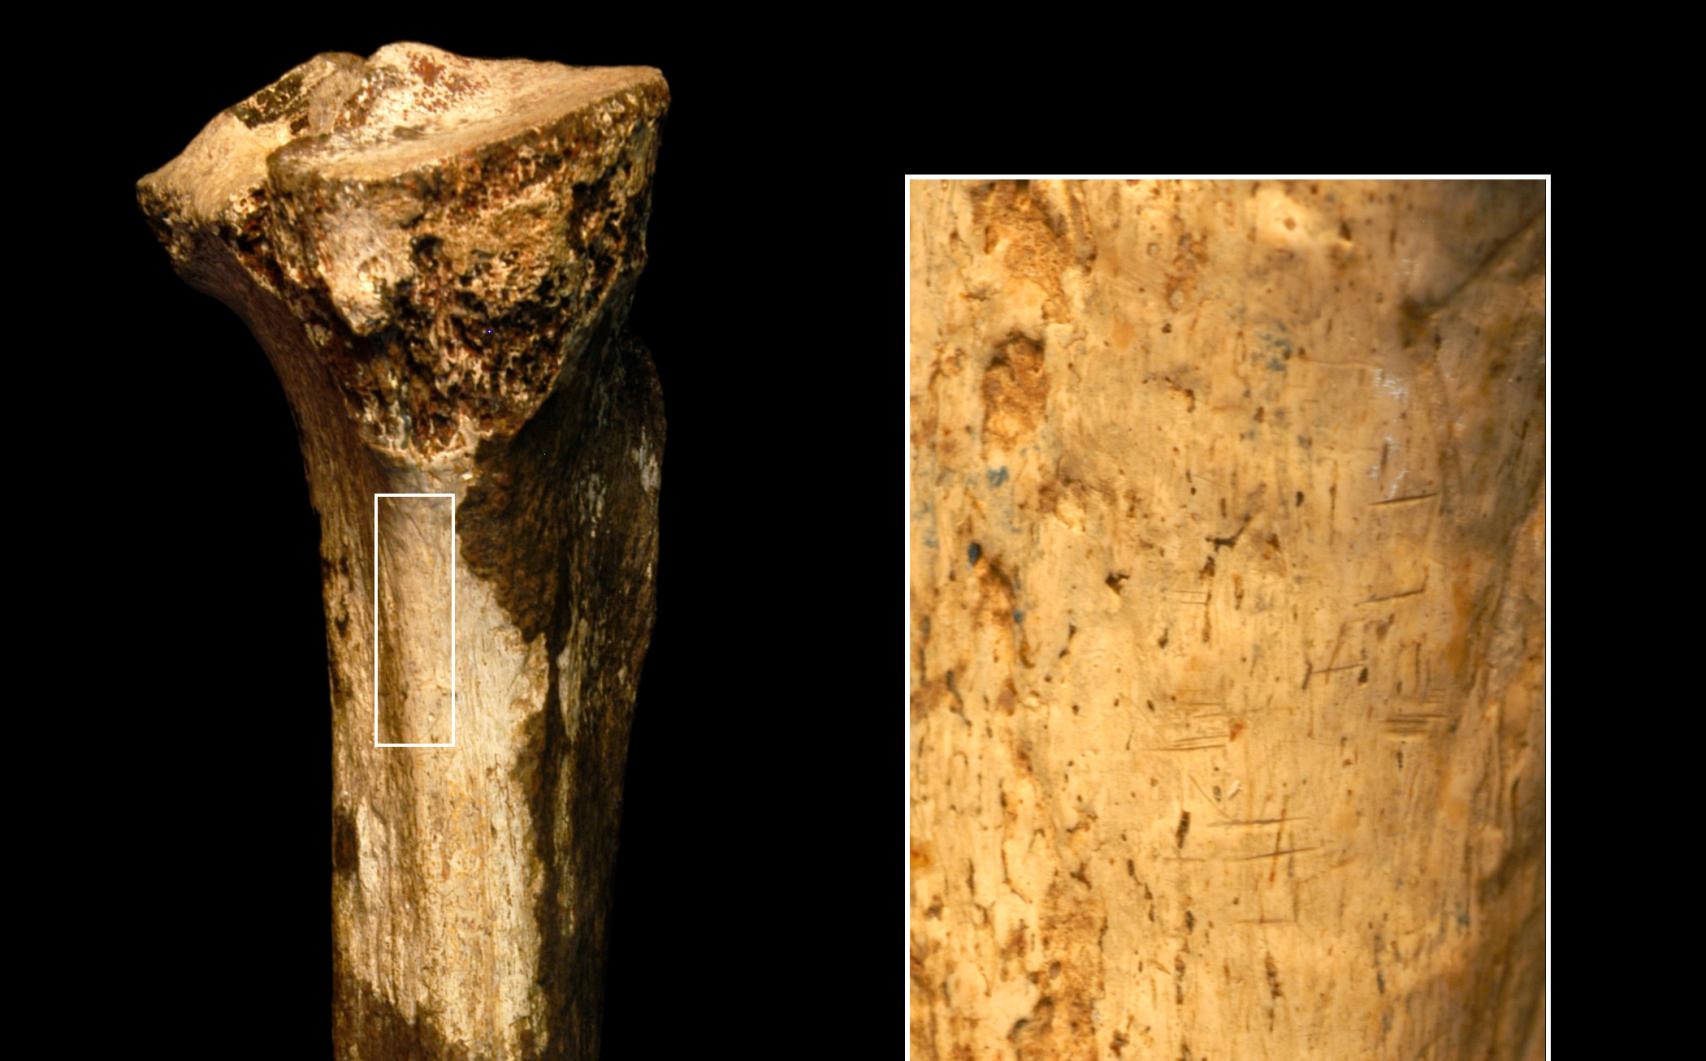 Detalle de una tibia de hace 1,45 millones de años y las marcas de corte.